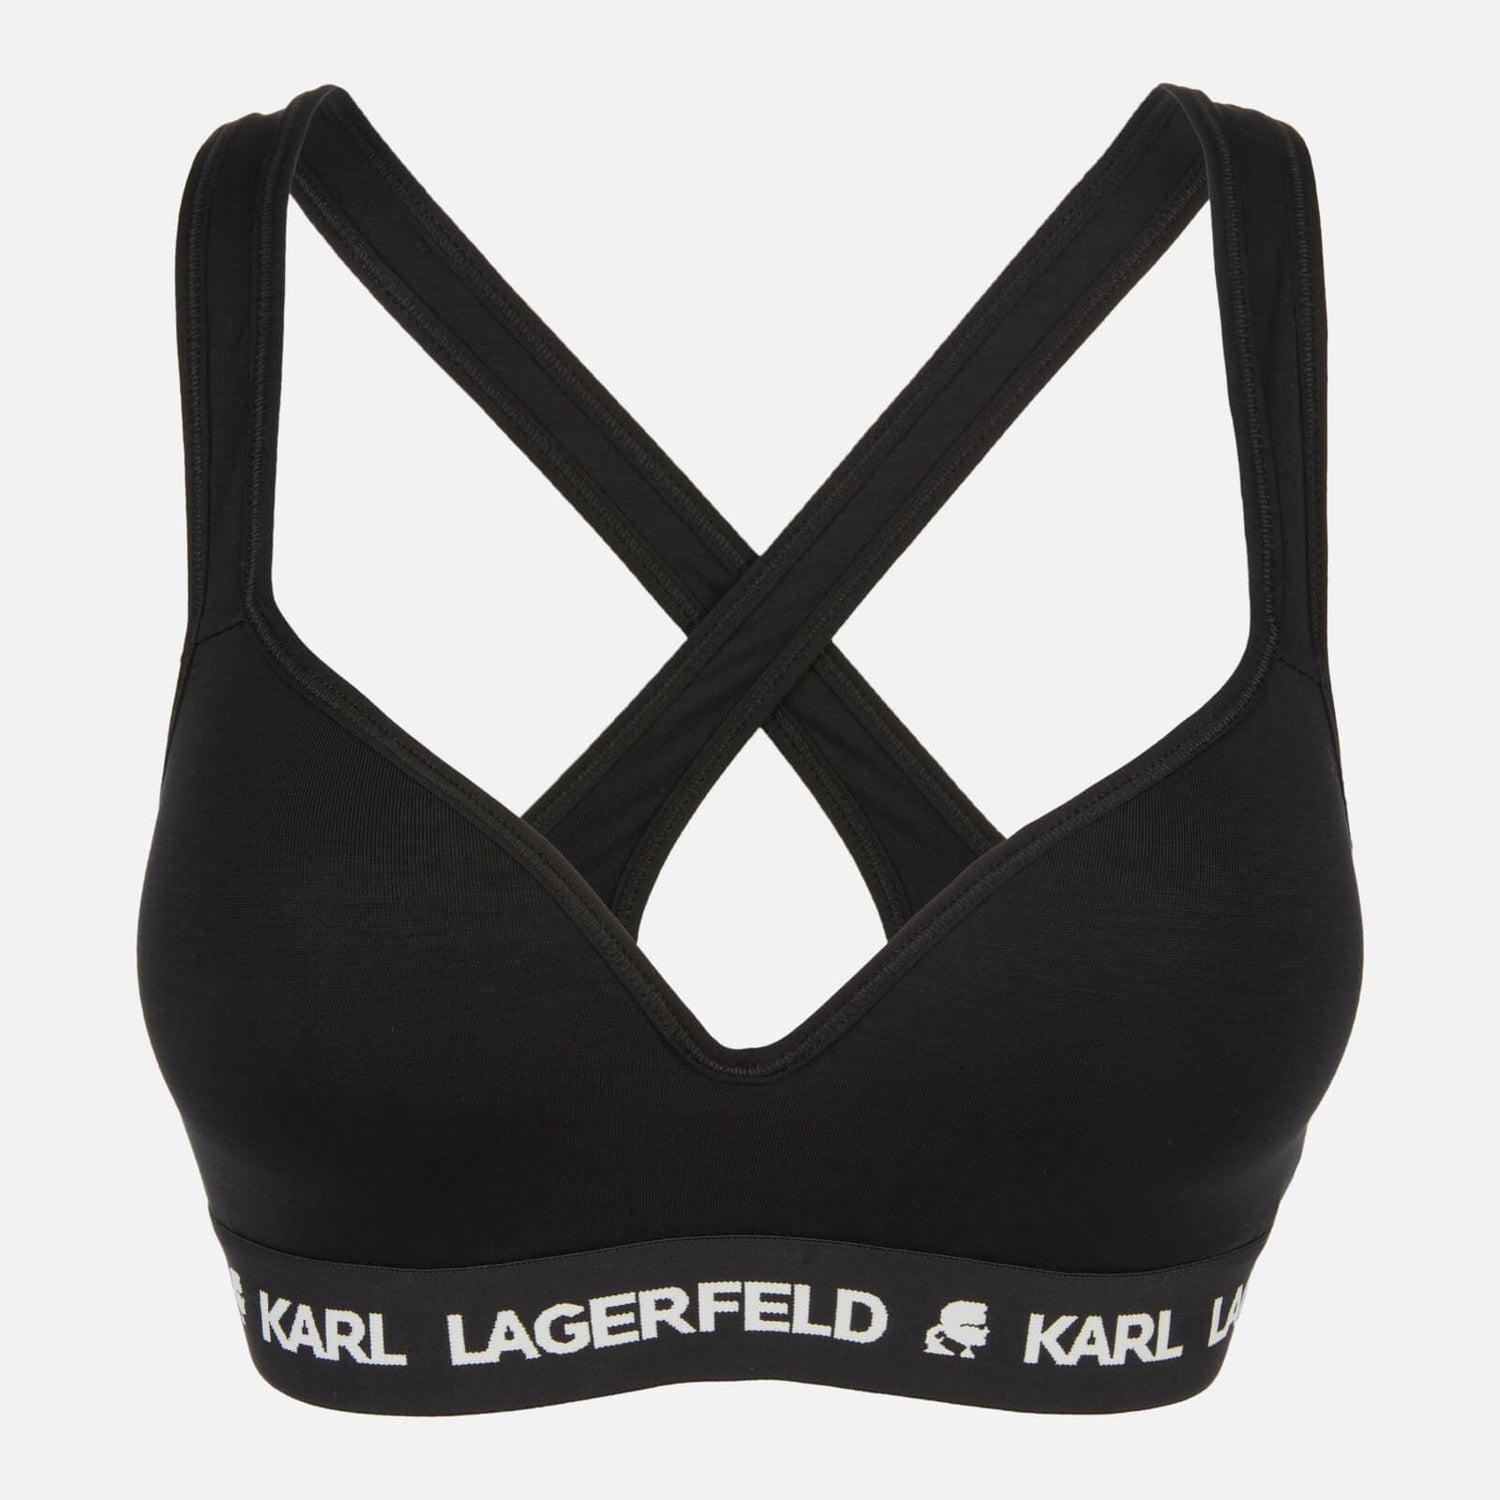 KARL LAGERFELD Women's Padded Logo Bra - Black